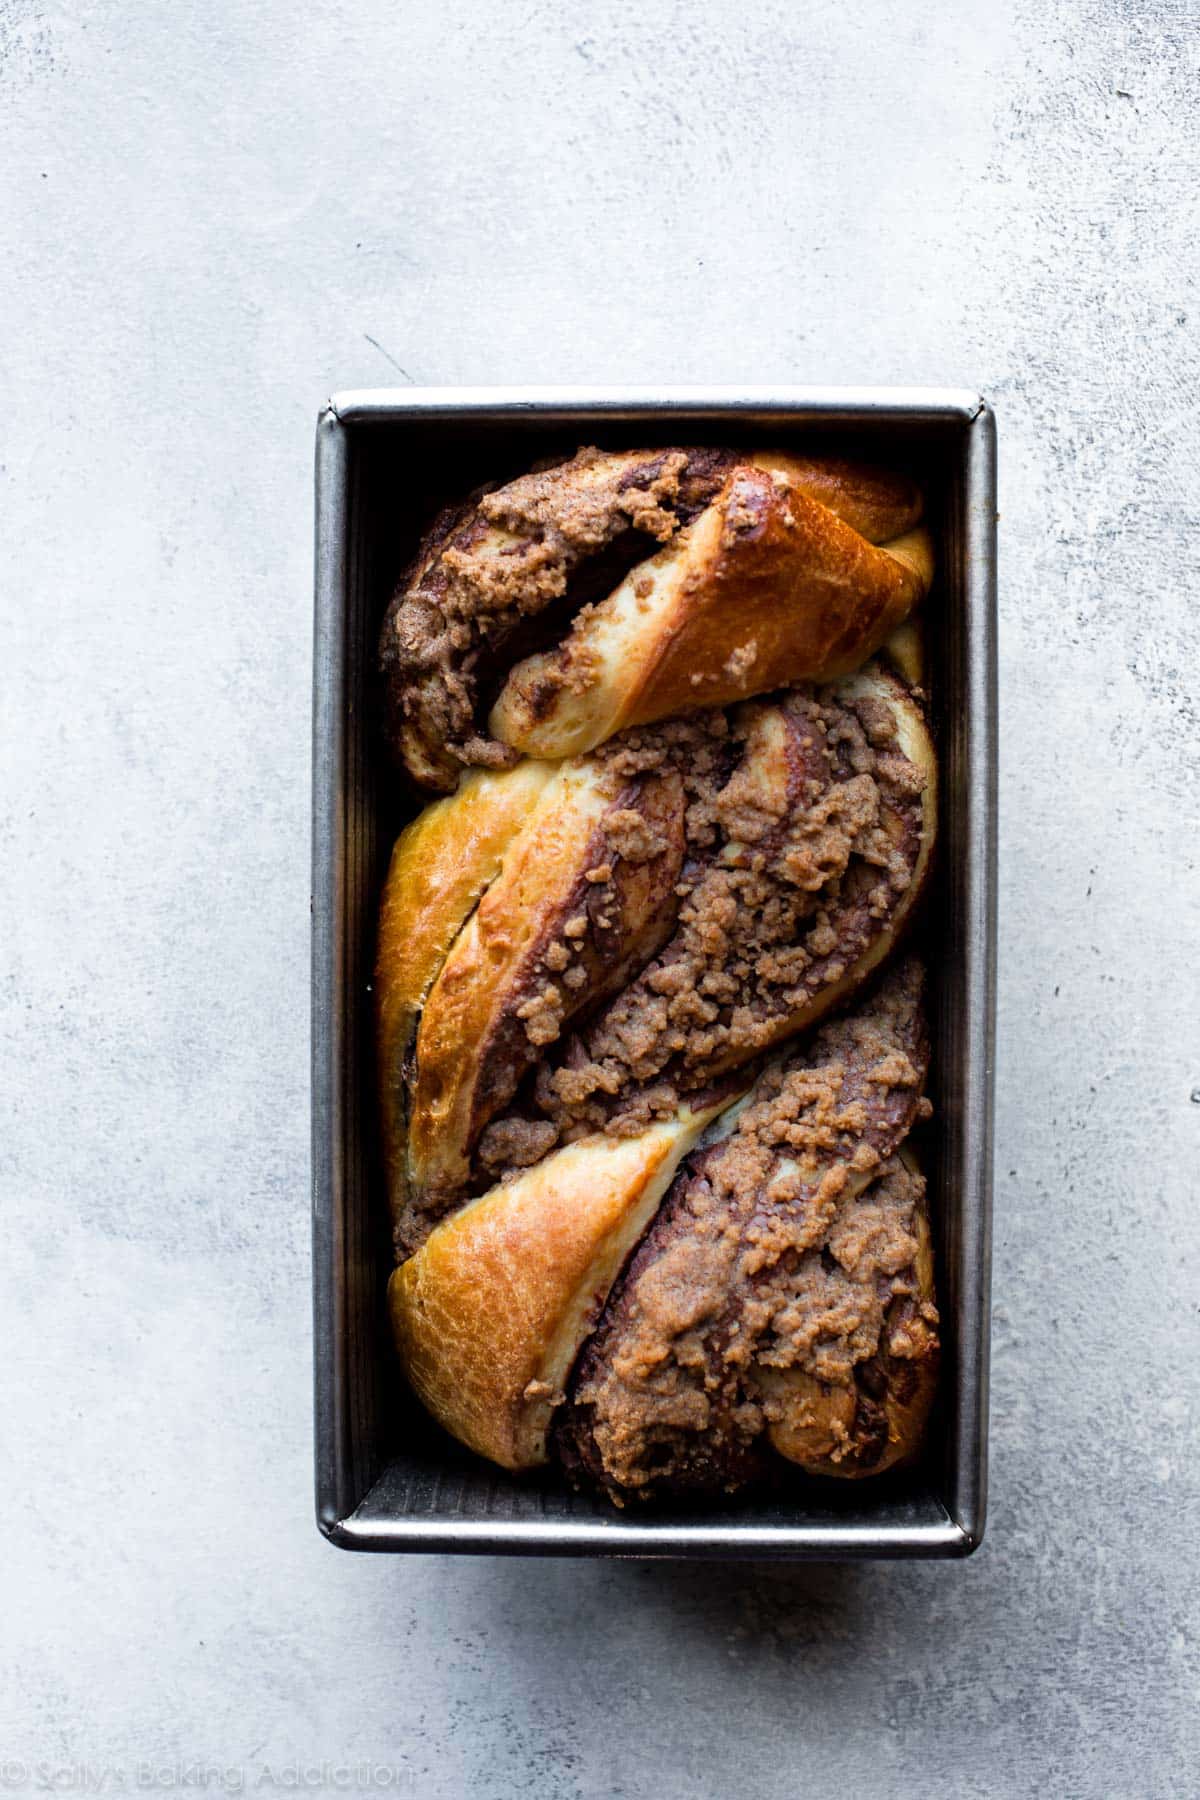 Nutella babka in a loaf pan after baking